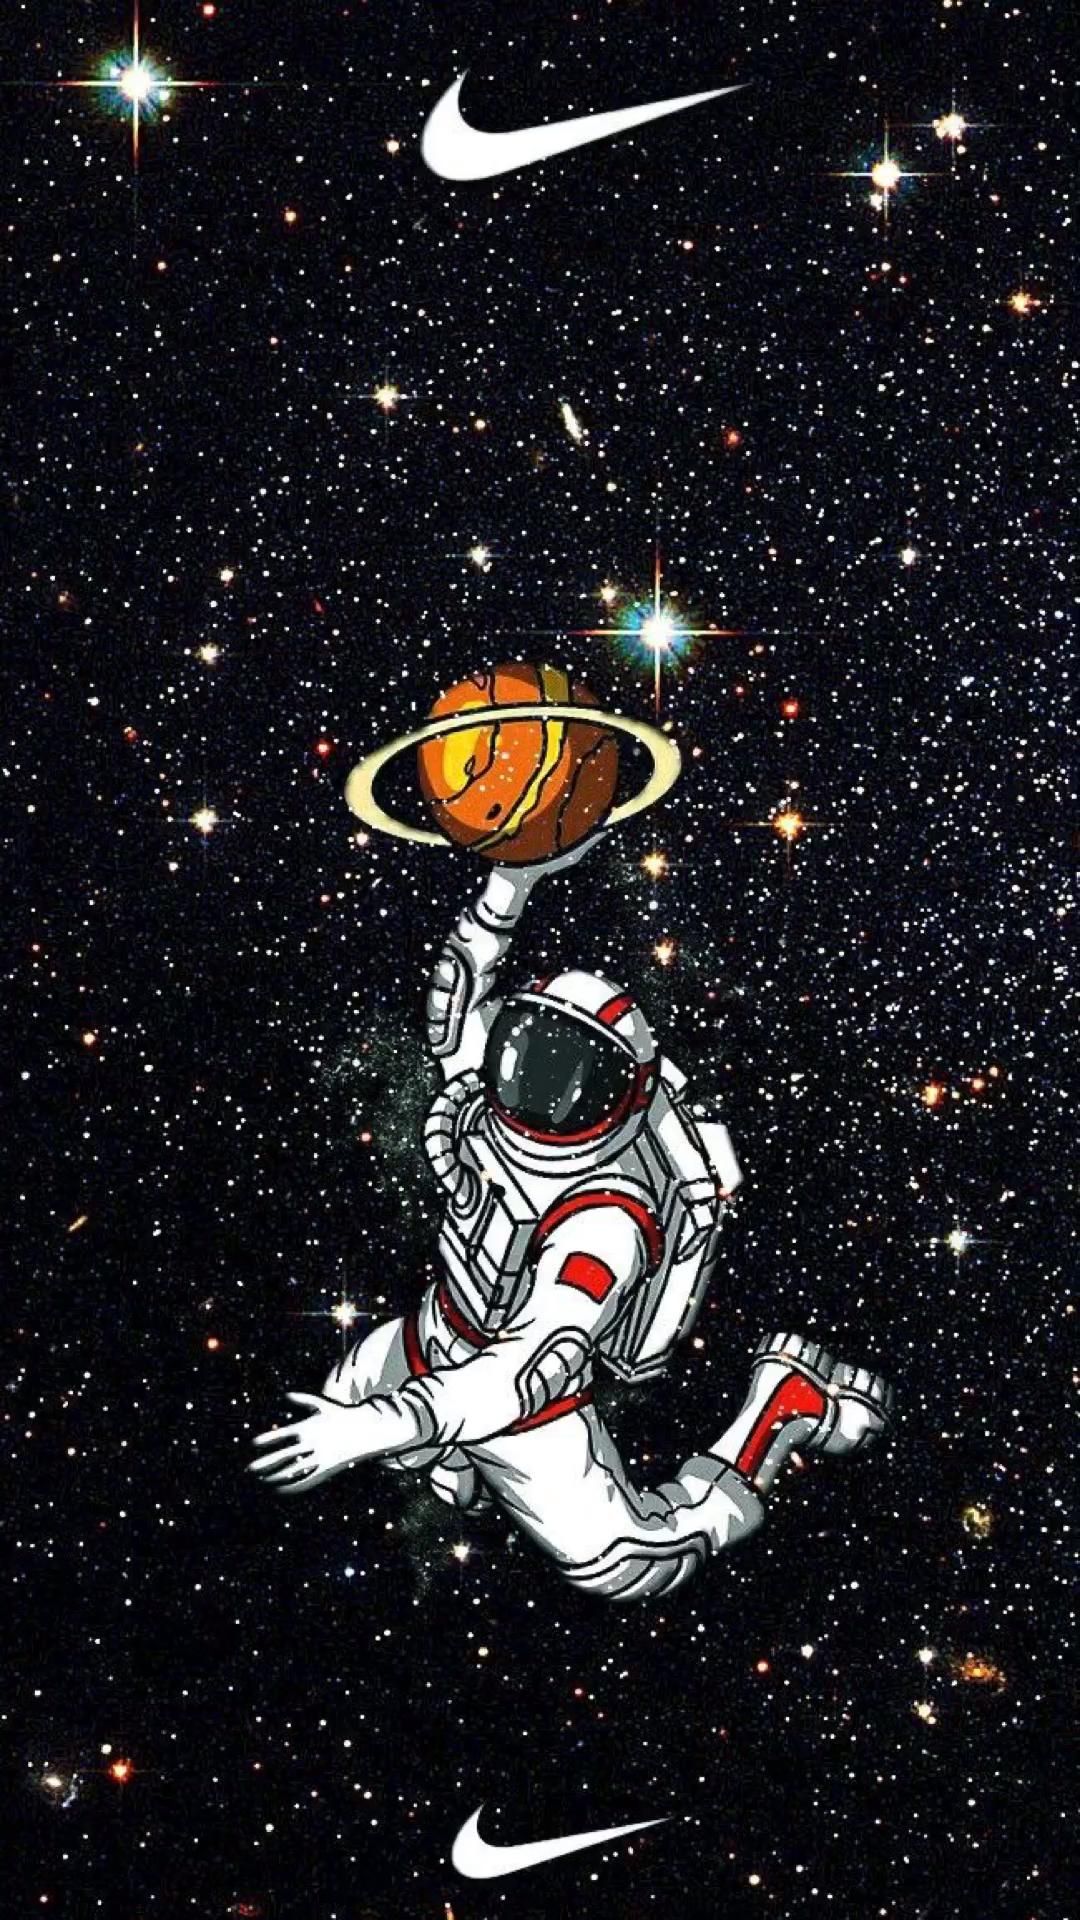 Basketball wallpaper. Astronaut